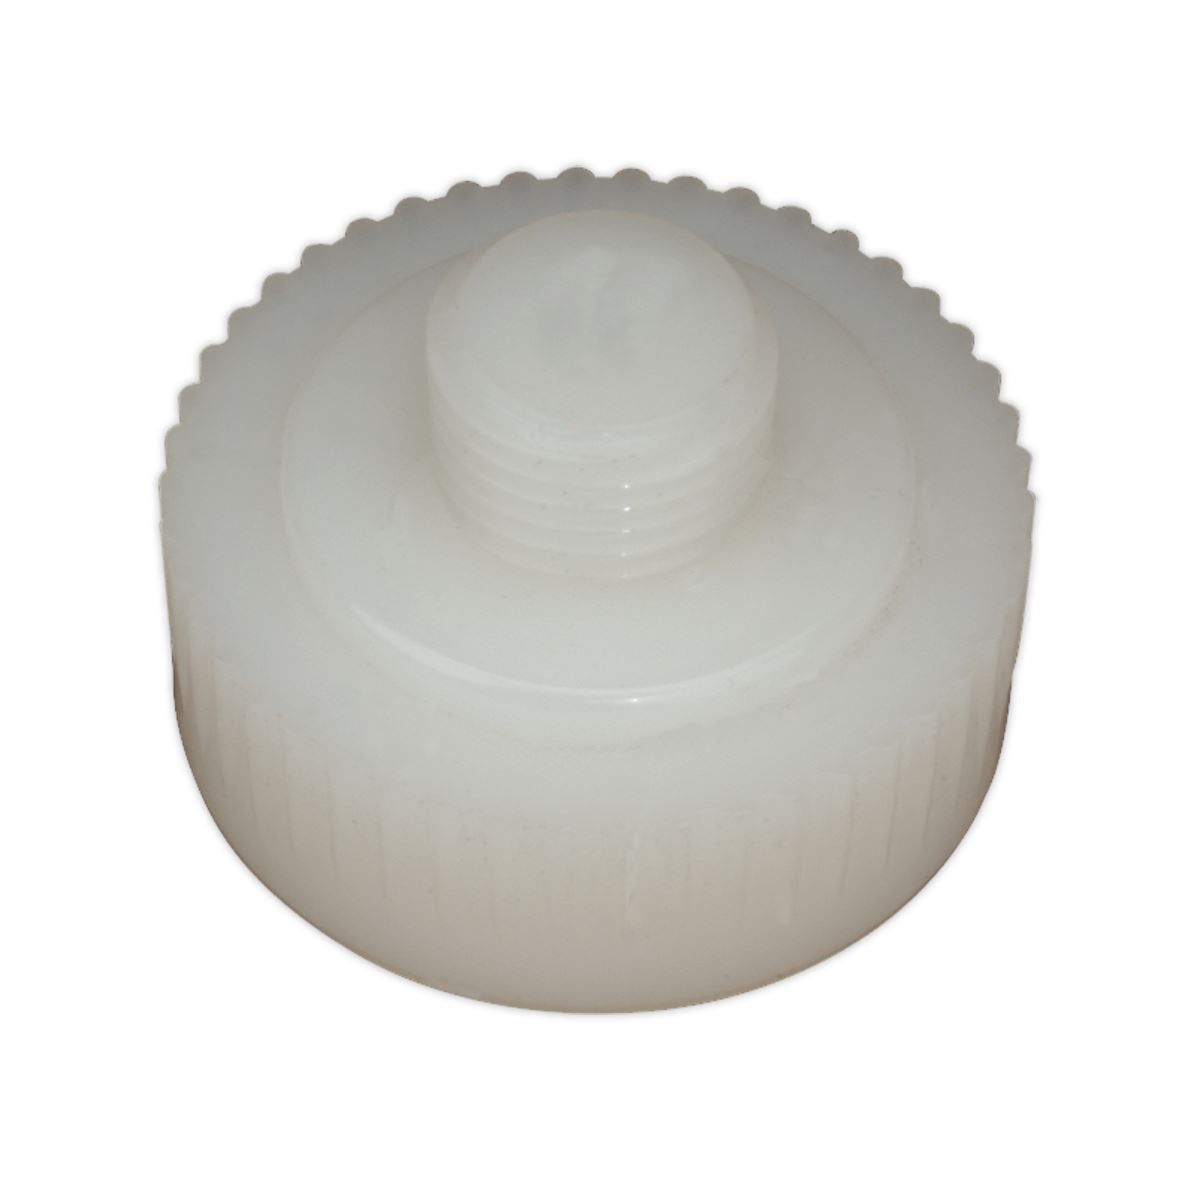 Sealey Premier Nylon Hammer Face, Hard/White for DBHN275